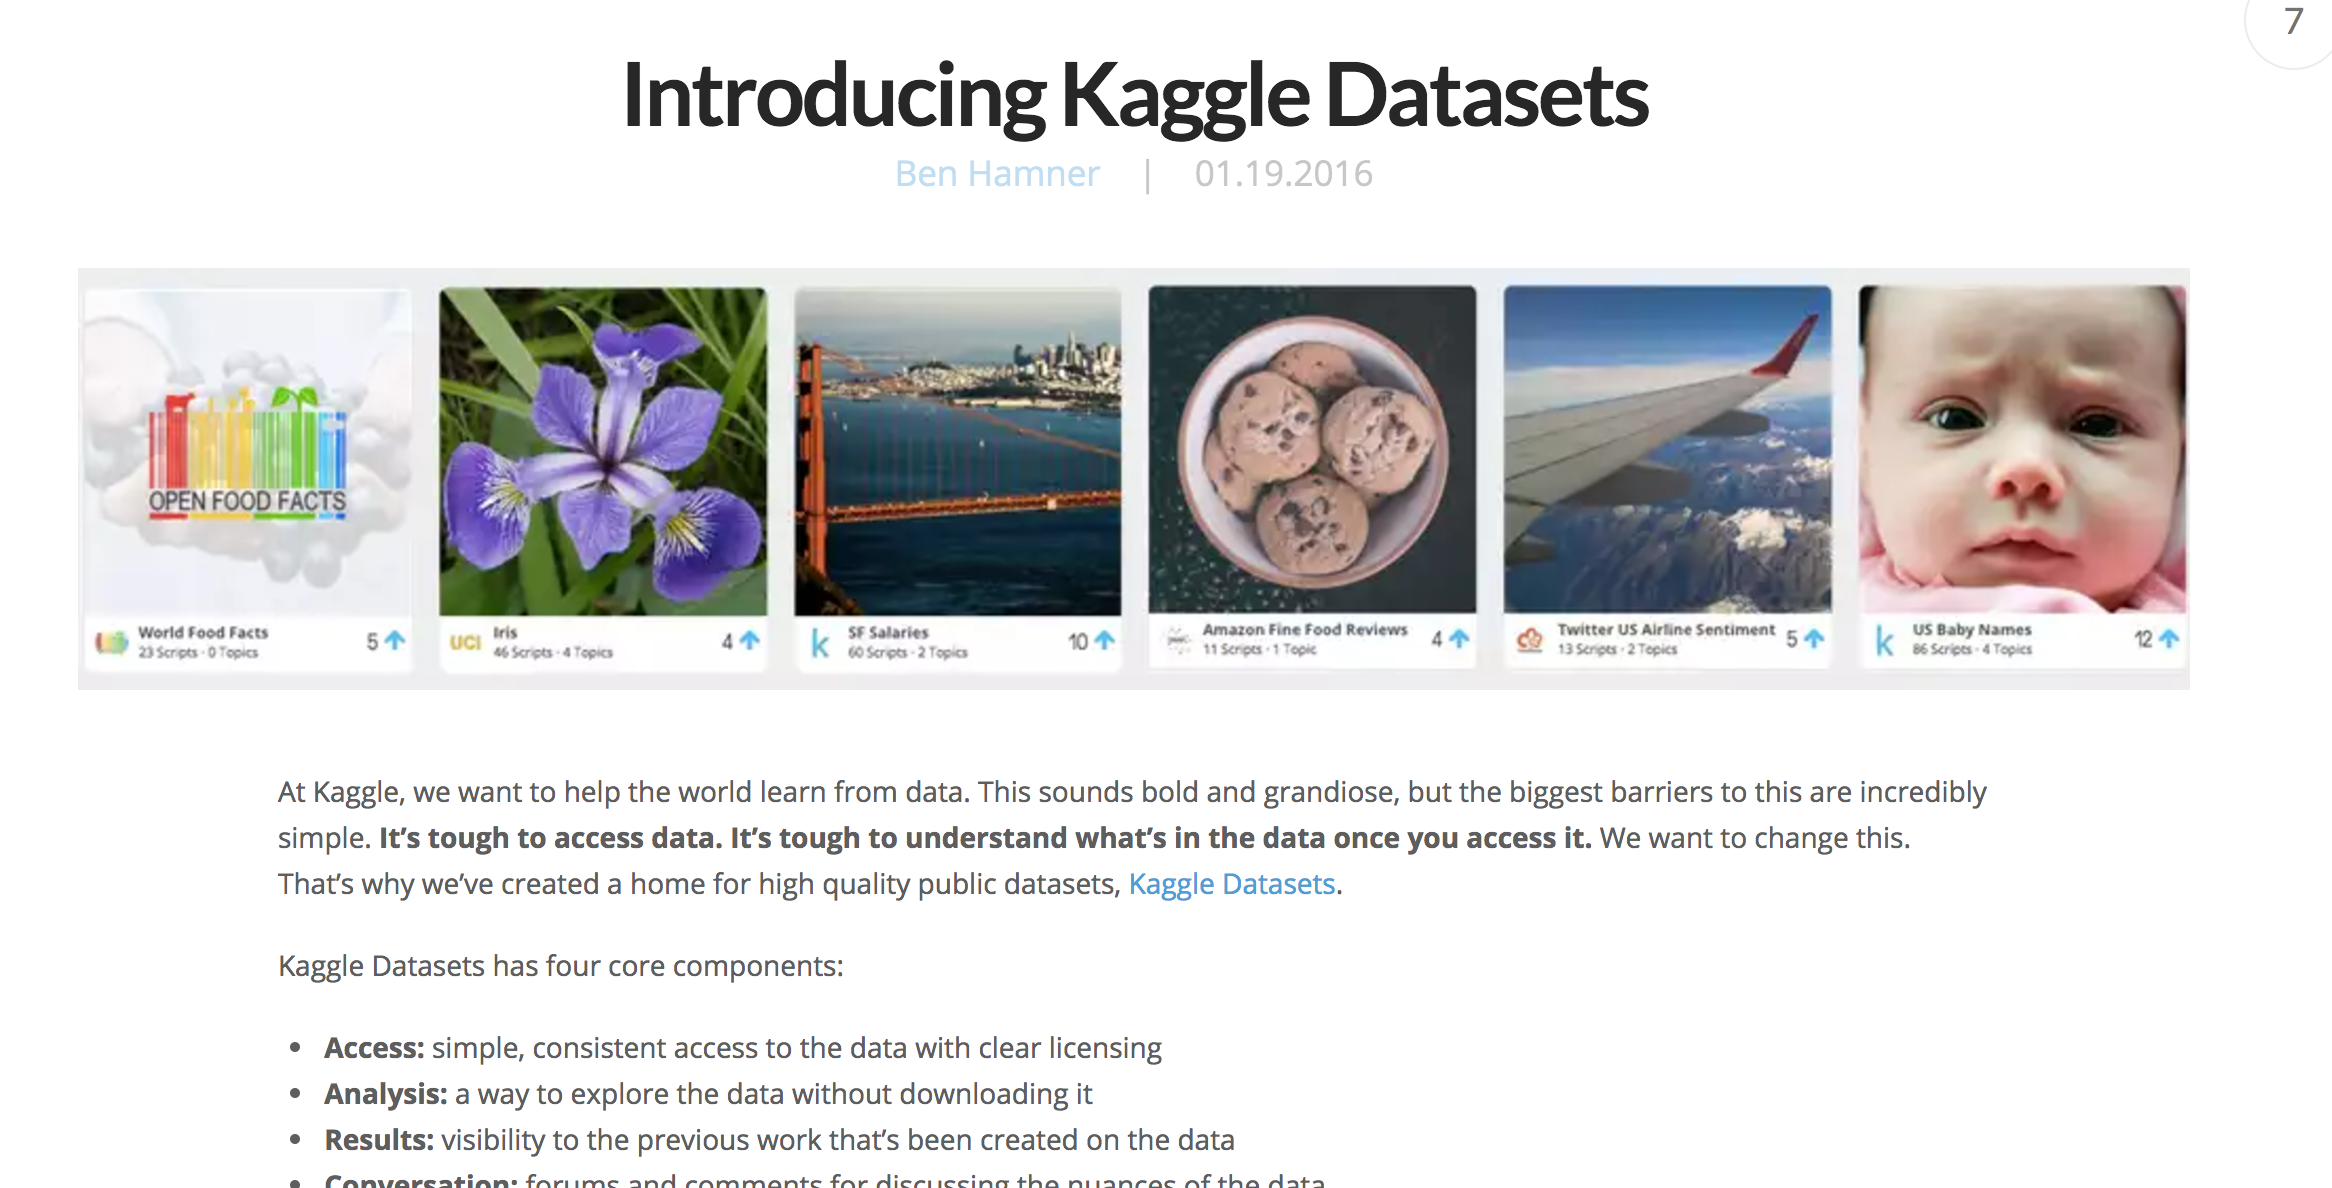 Kaggle DataSets